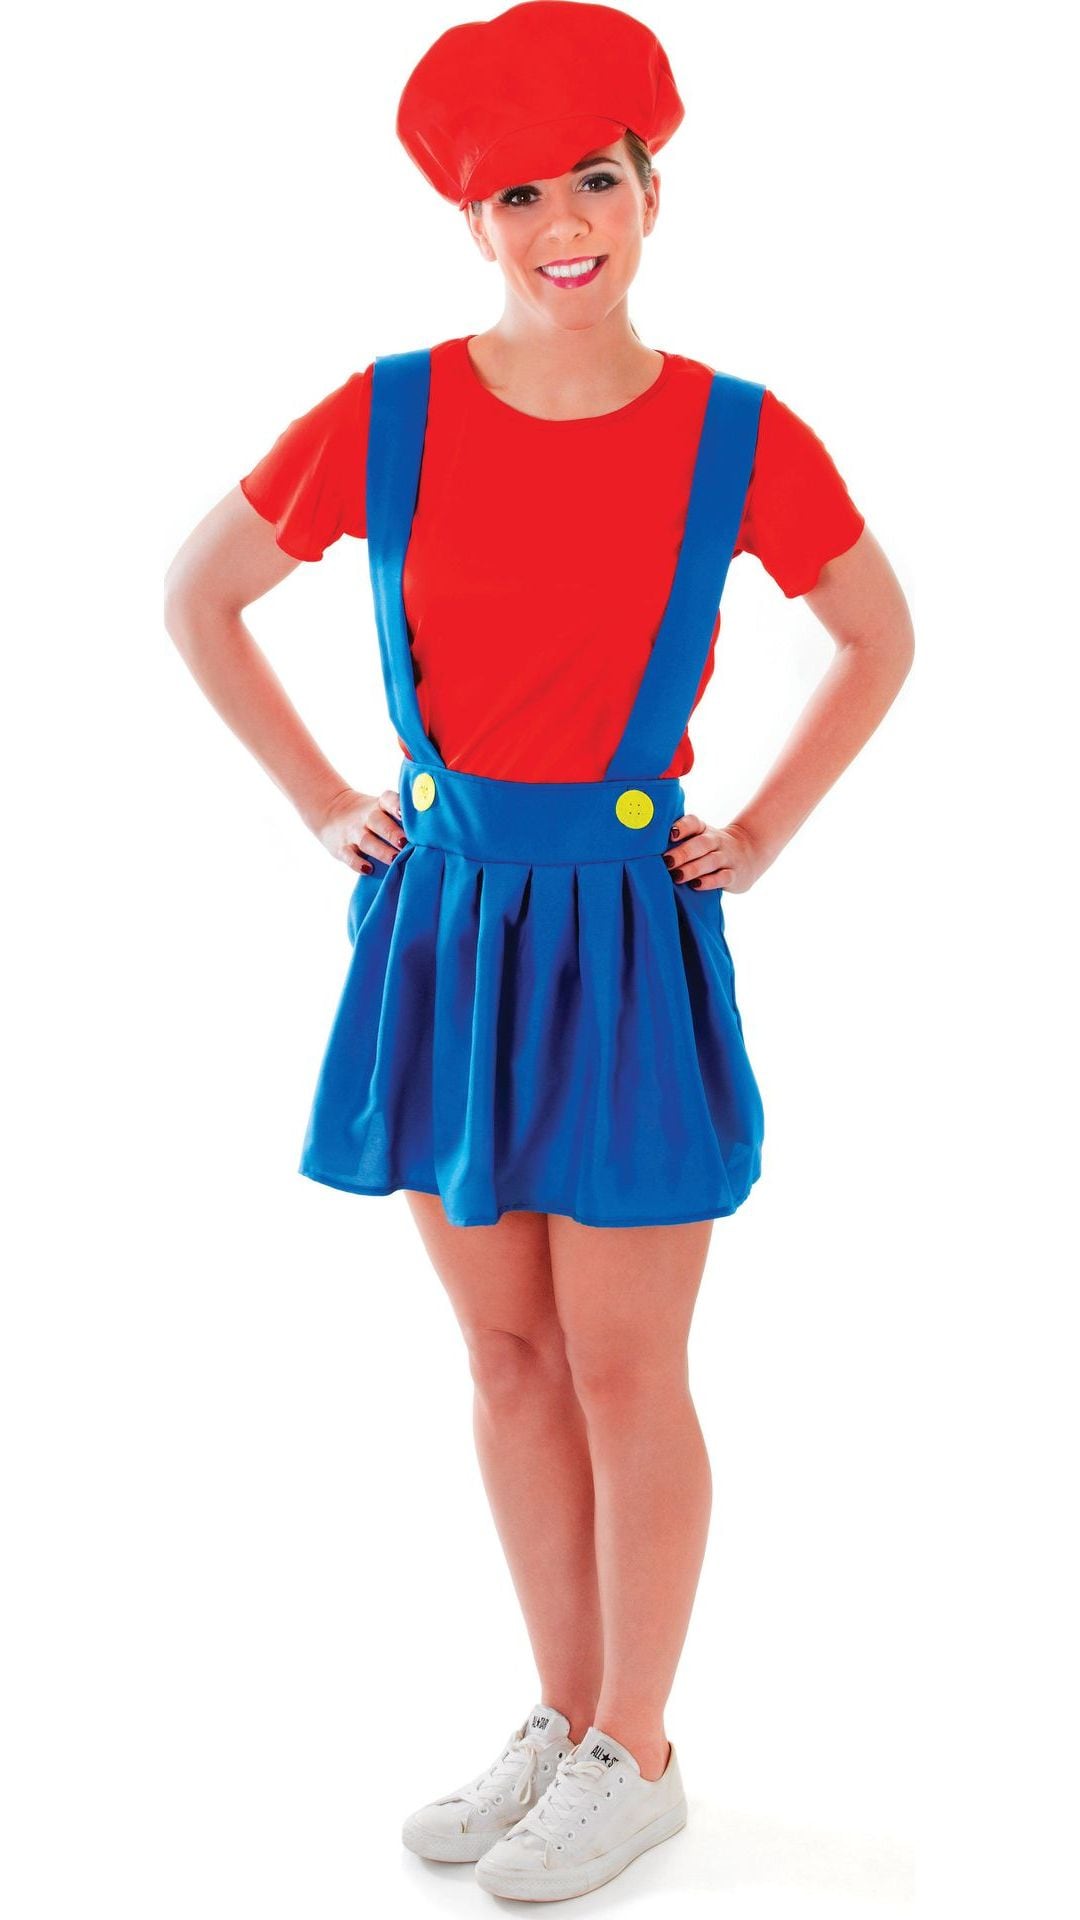 Mario kostuum vrouw